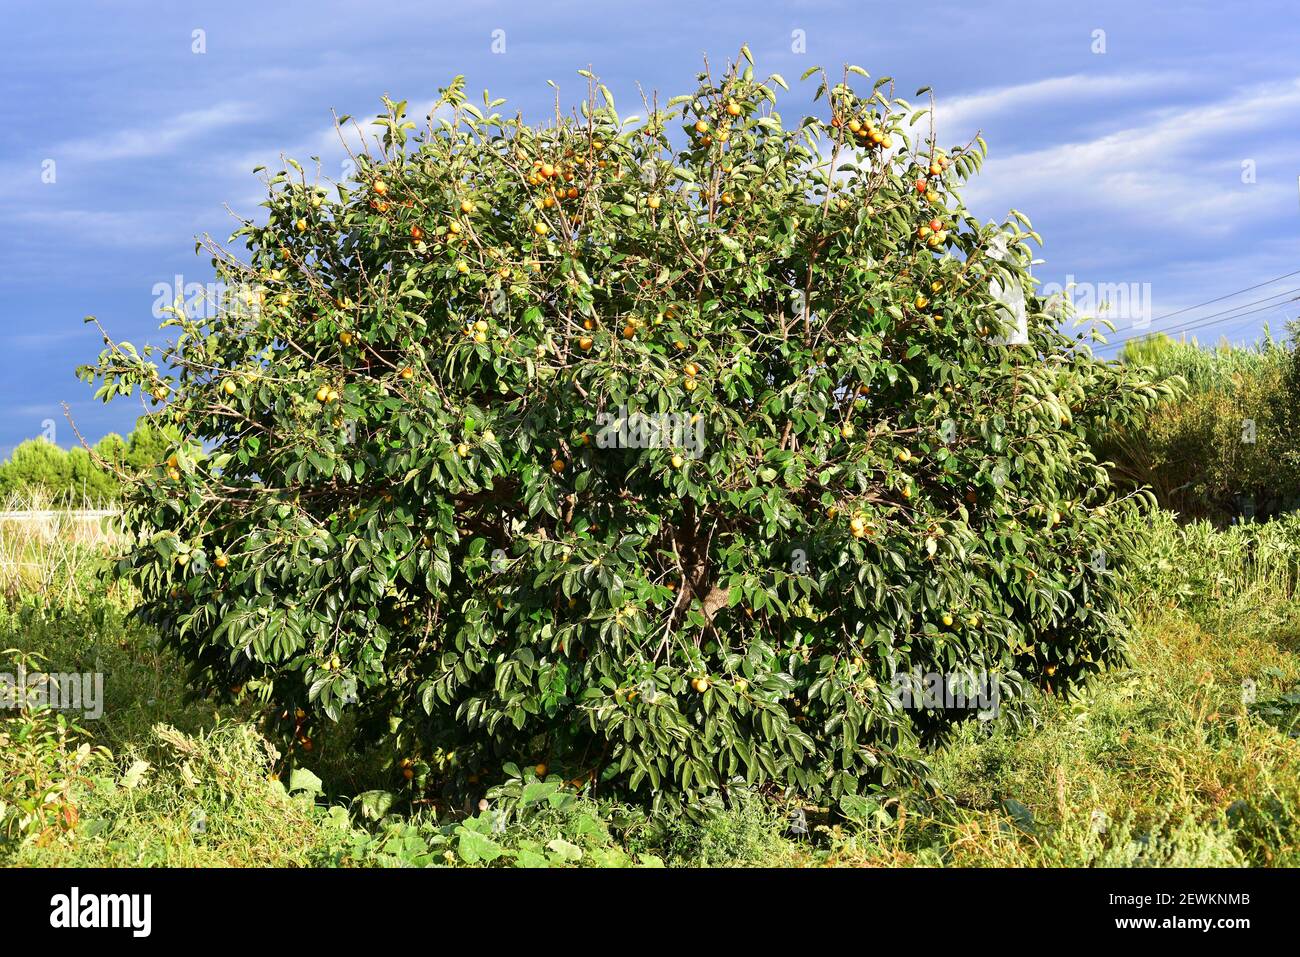 Il persimmon cinese o il persimmon orientale (Diospyros kaki) è un albero deciduo originario dell'Asia e ampiamente coltivato per i suoi frutti commestibili. Questa foto Foto Stock